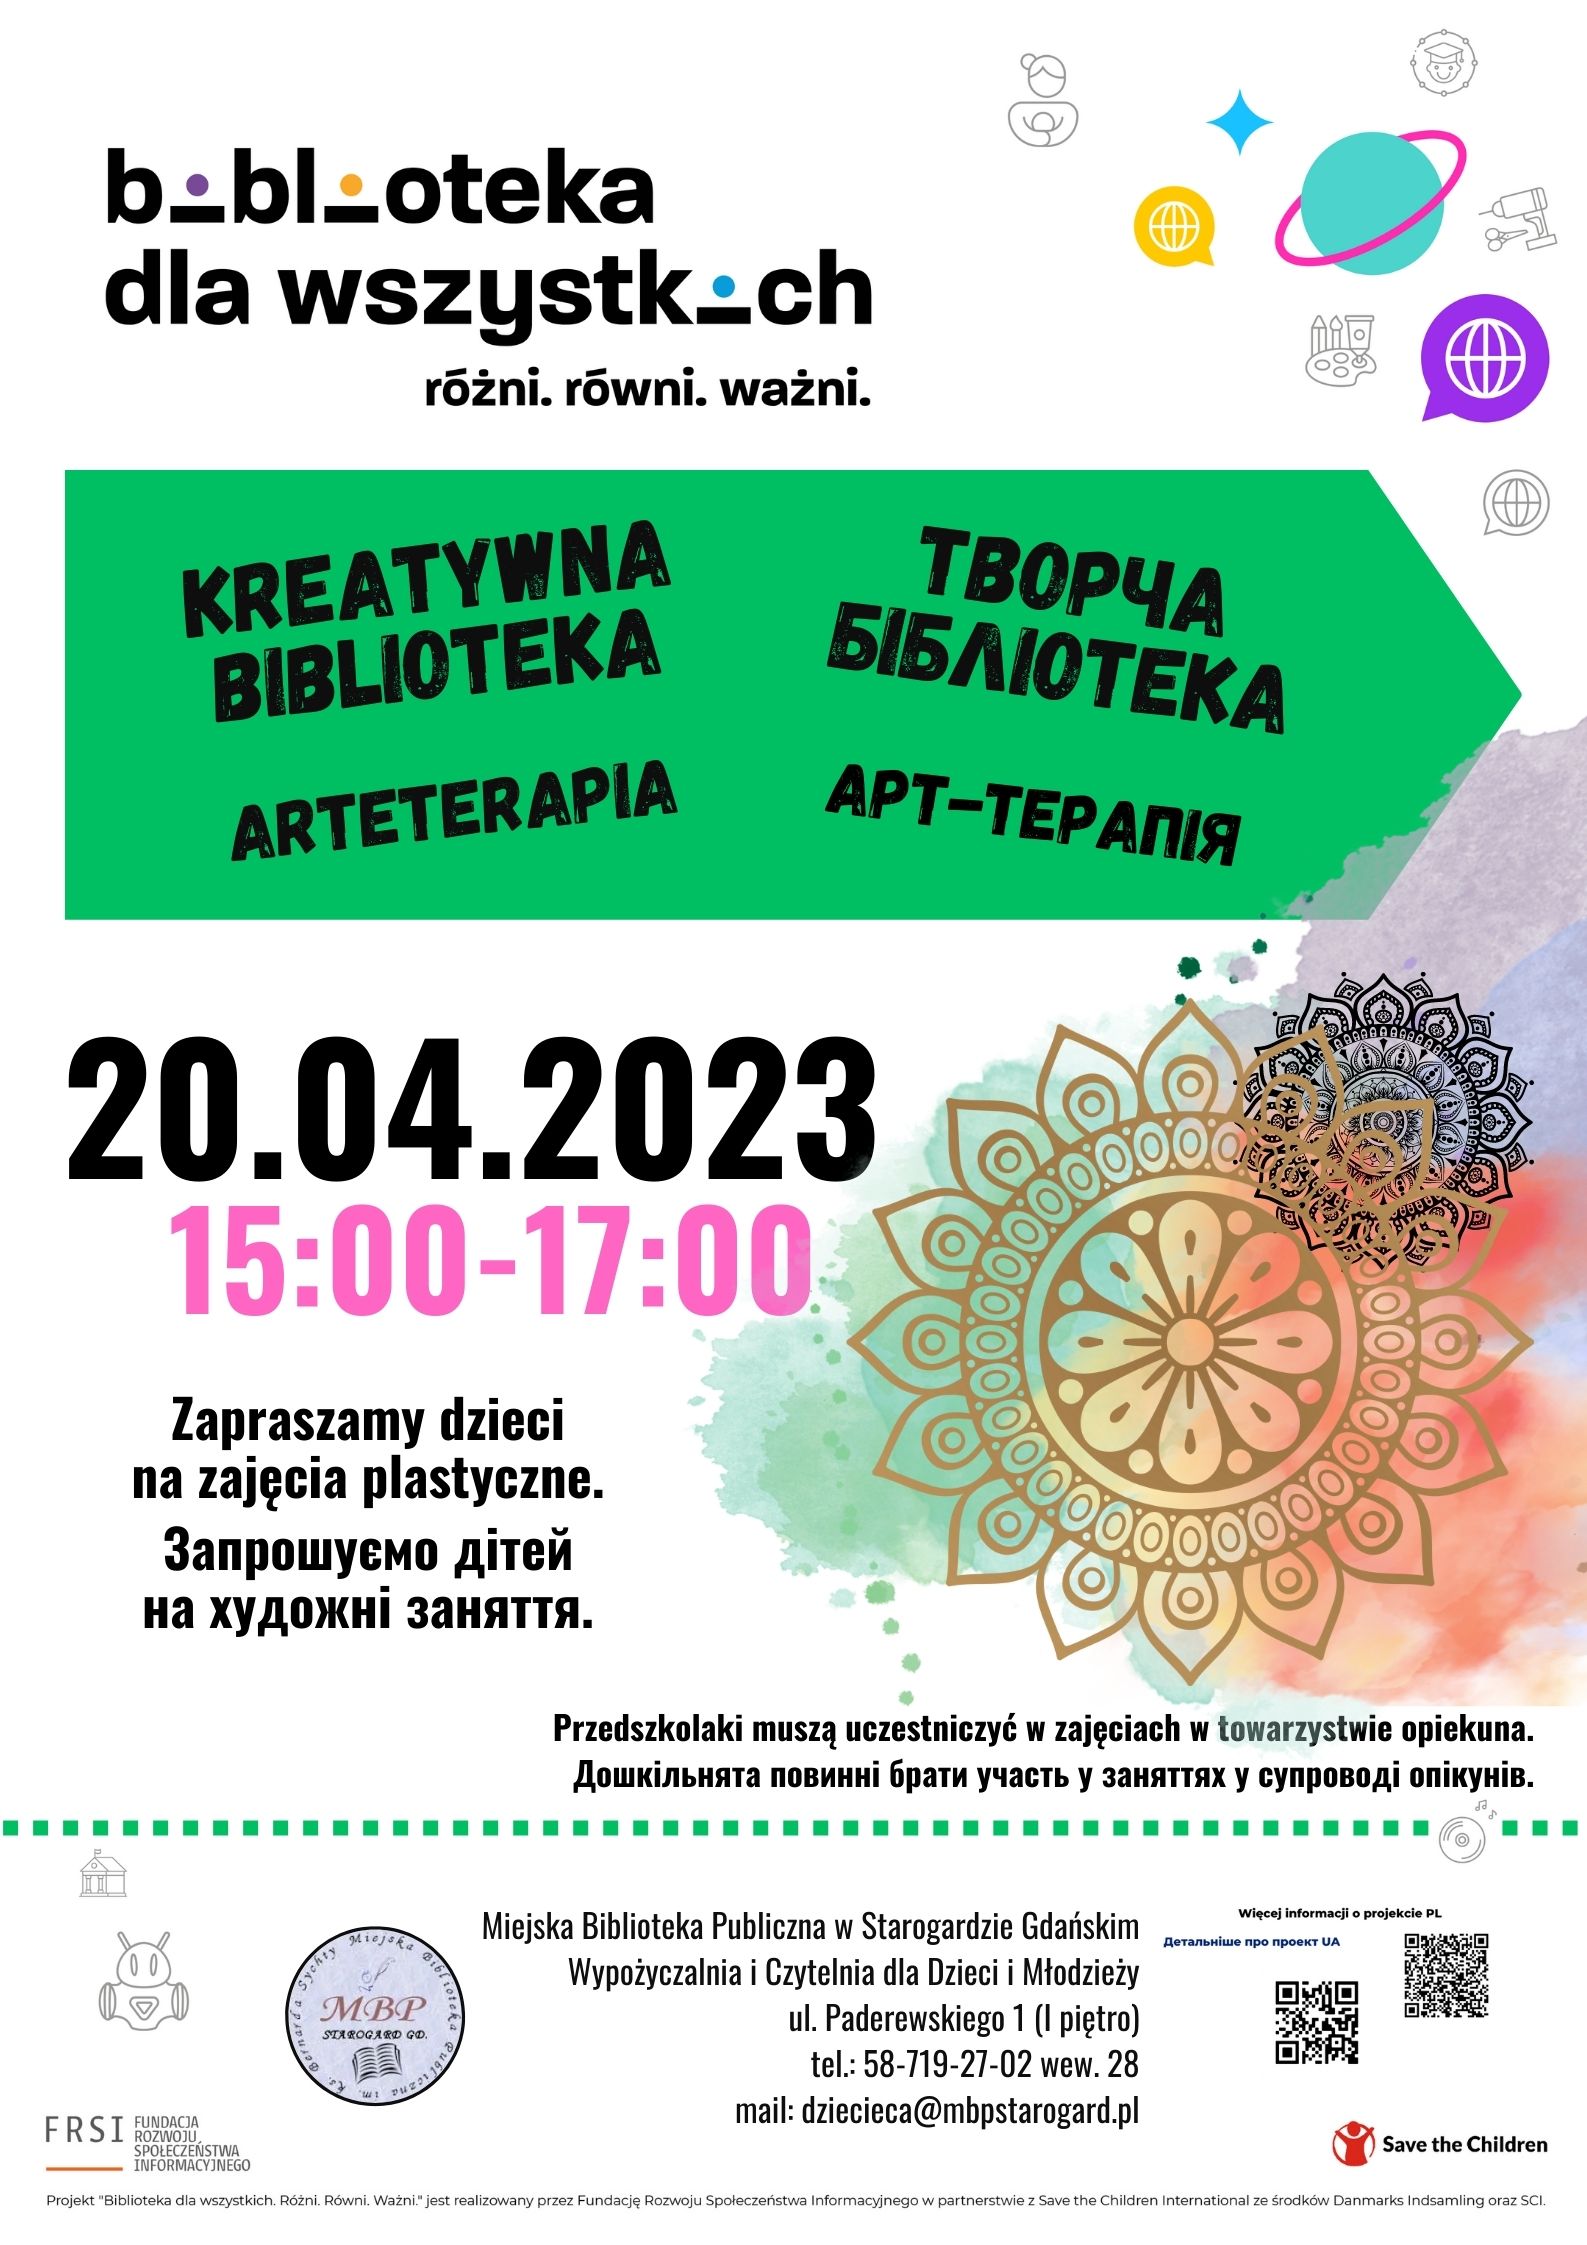 Plakat zawiera informacje na temat organizowanego wydarzenia KREATYWNA BIBLIOTEKA-ARTETERAPIA w dniu 20042023 roku o godzinie 15.00